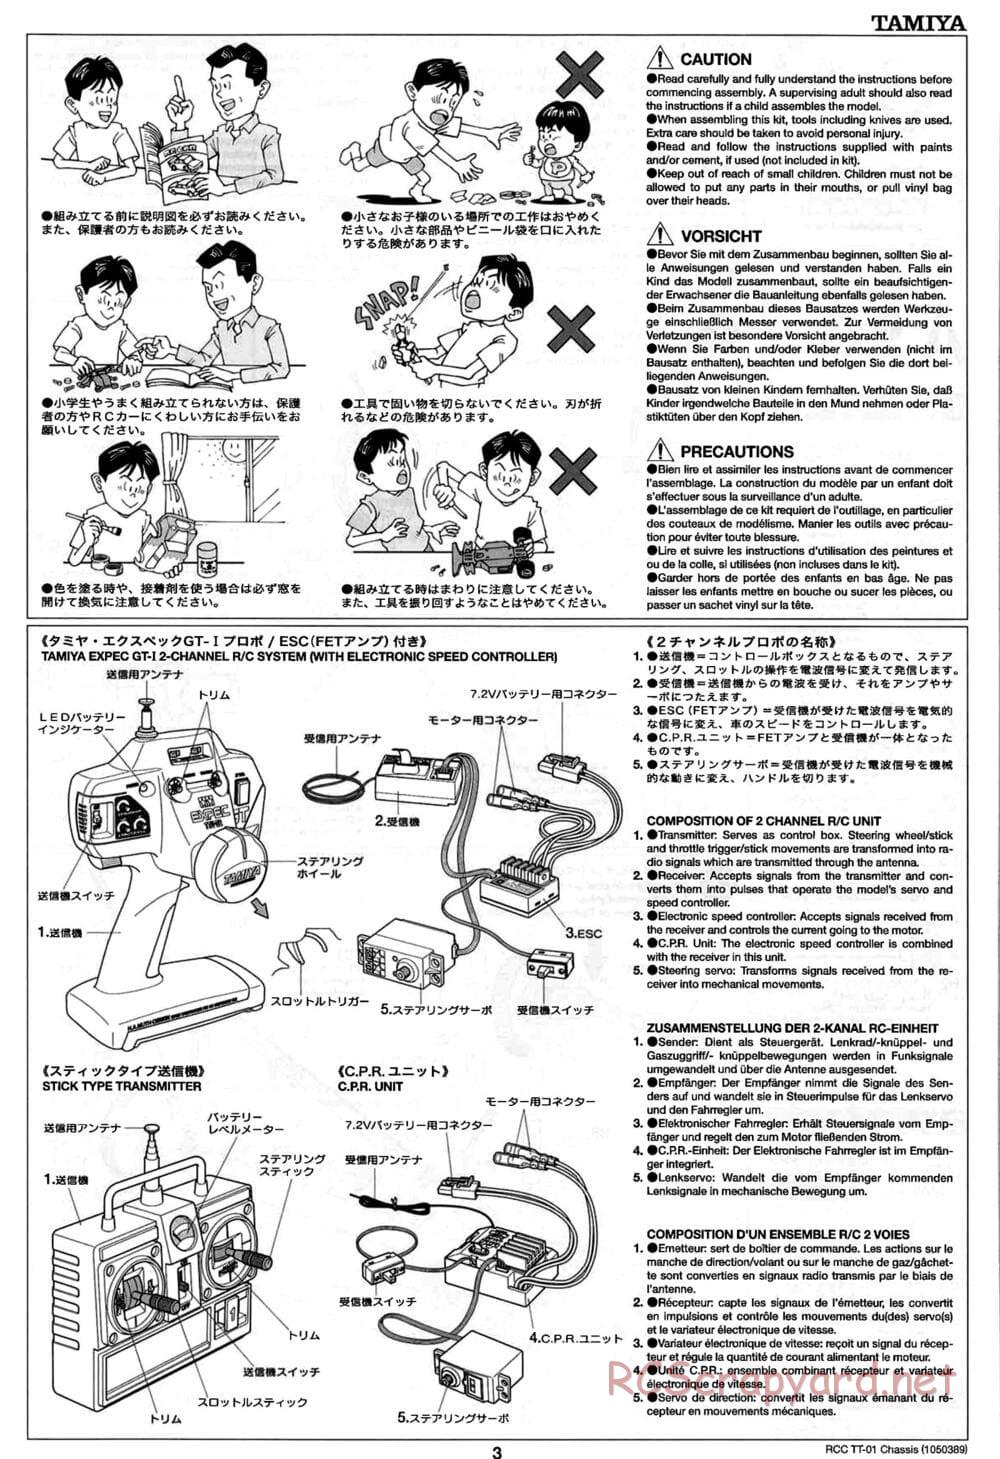 Tamiya - TT-01 Chassis - Manual - Page 3